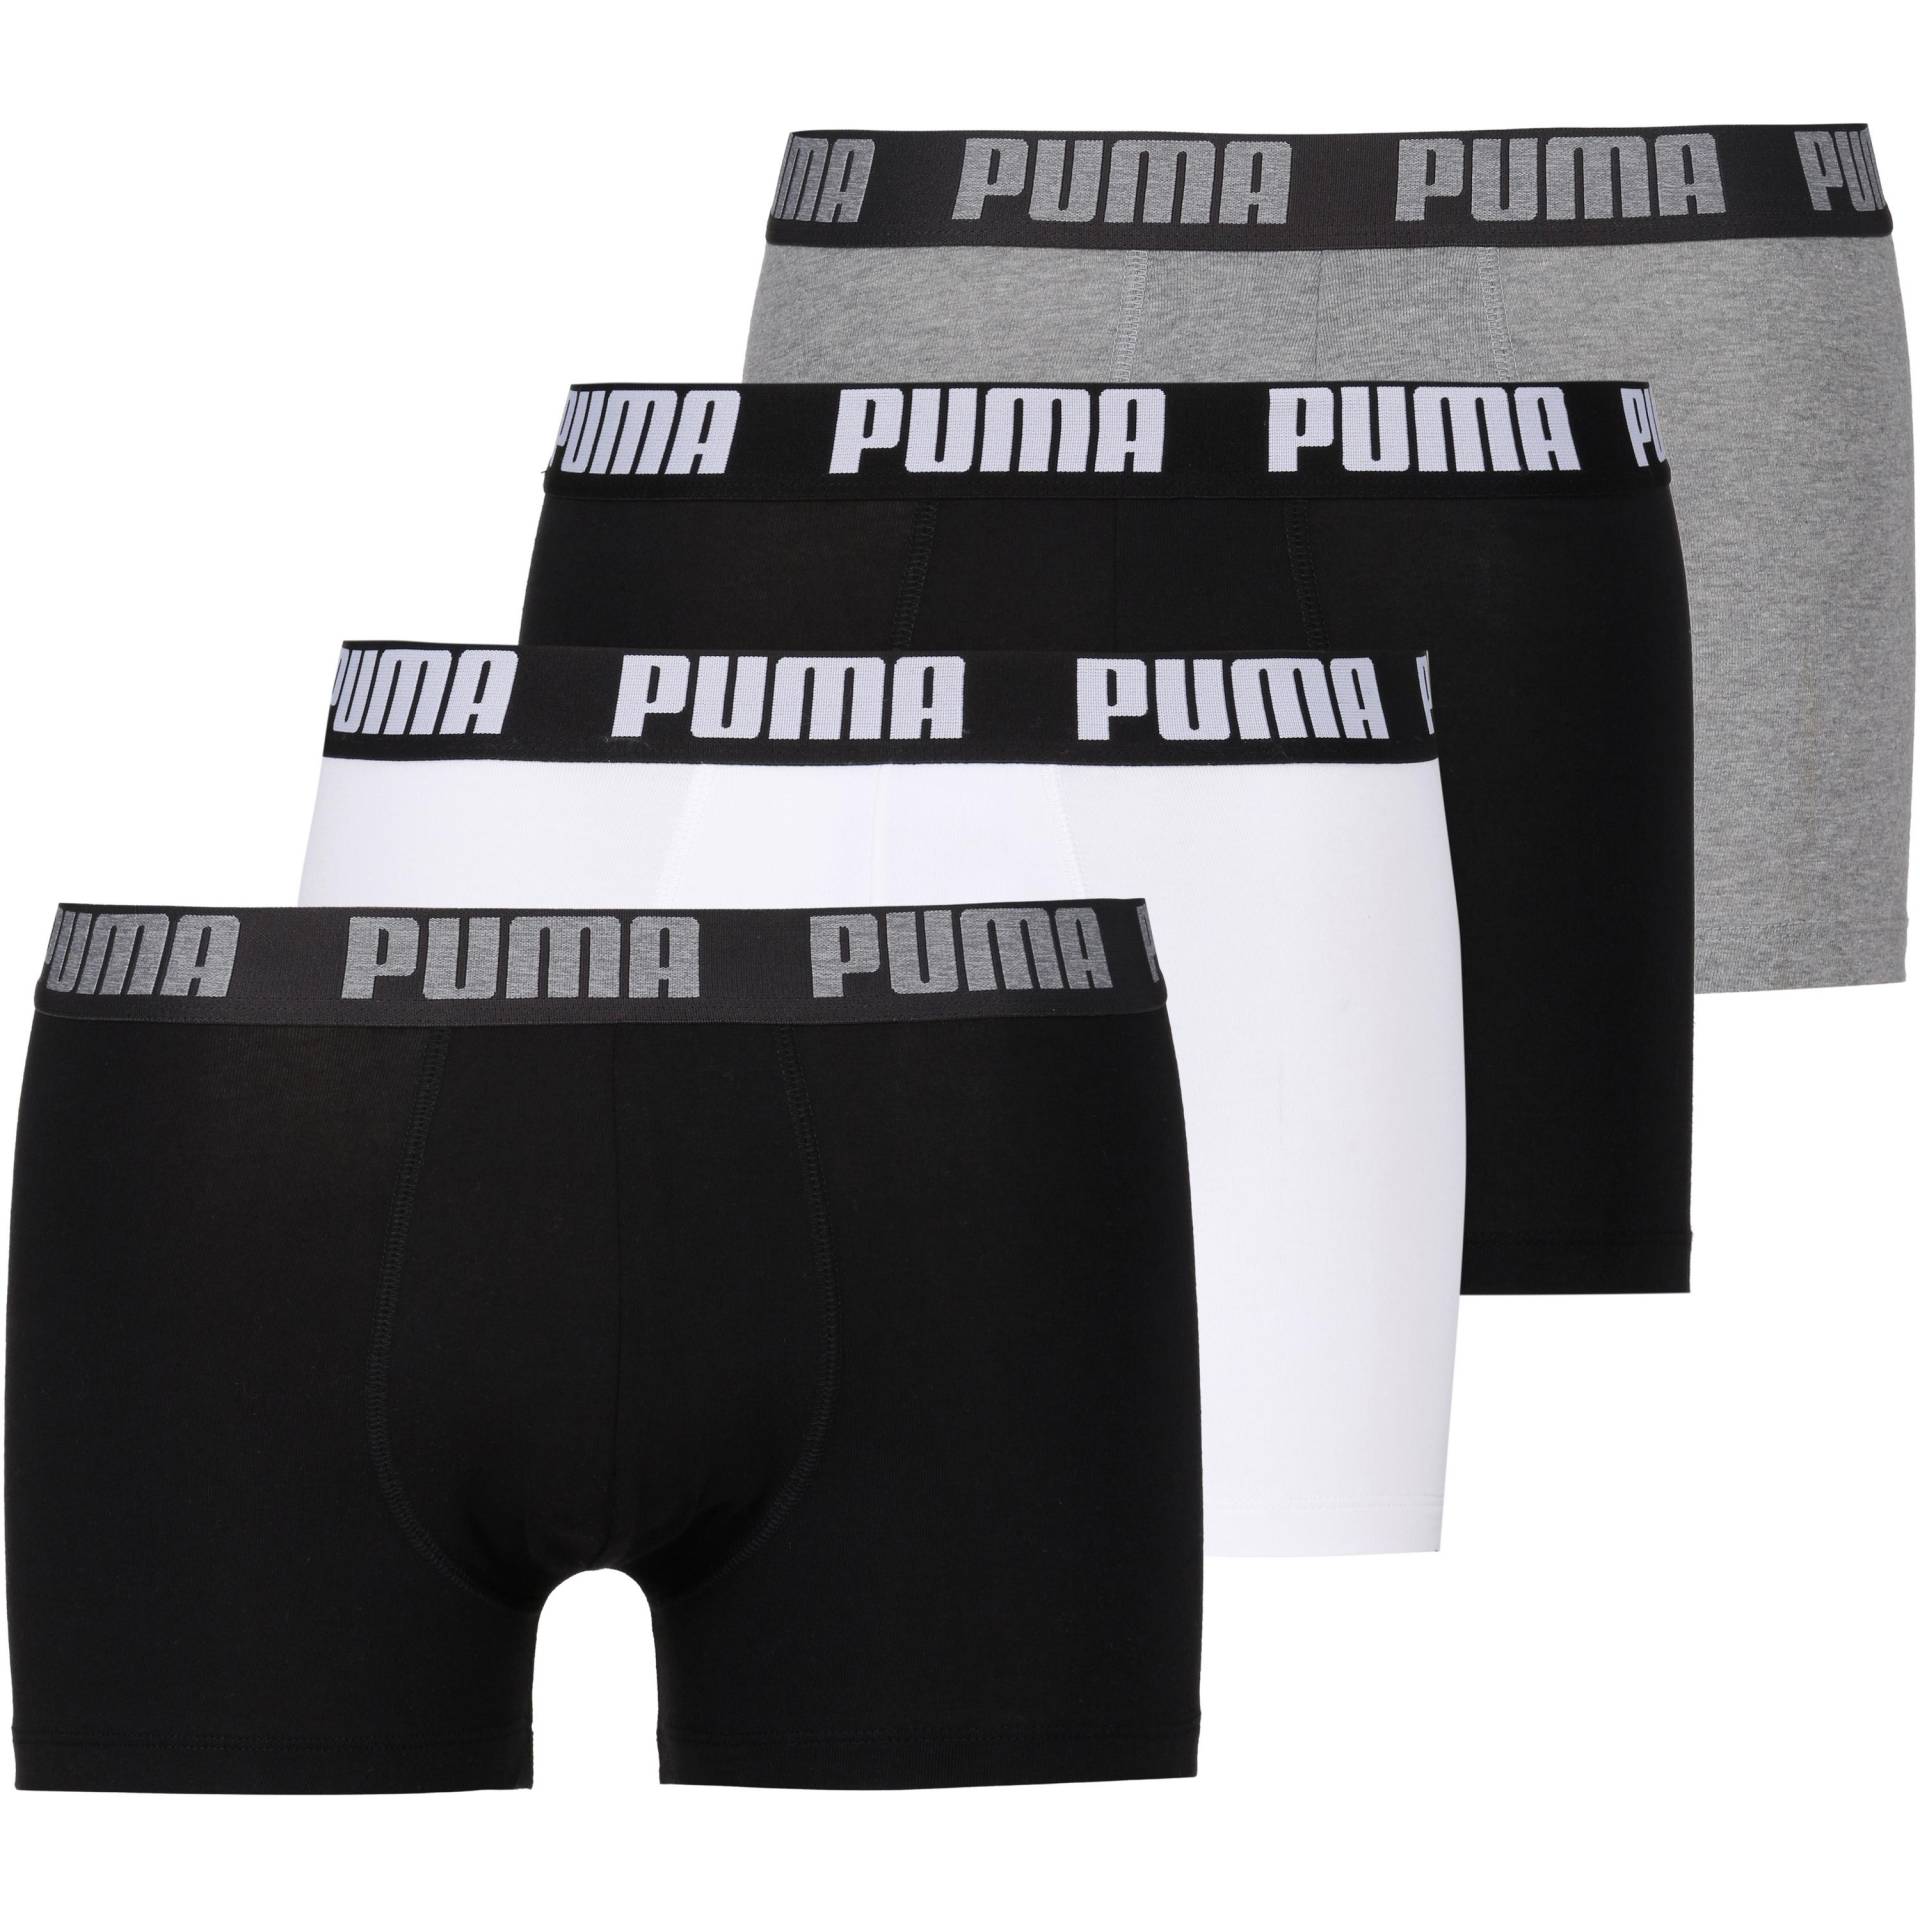 PUMA Unterhose Herren von Puma